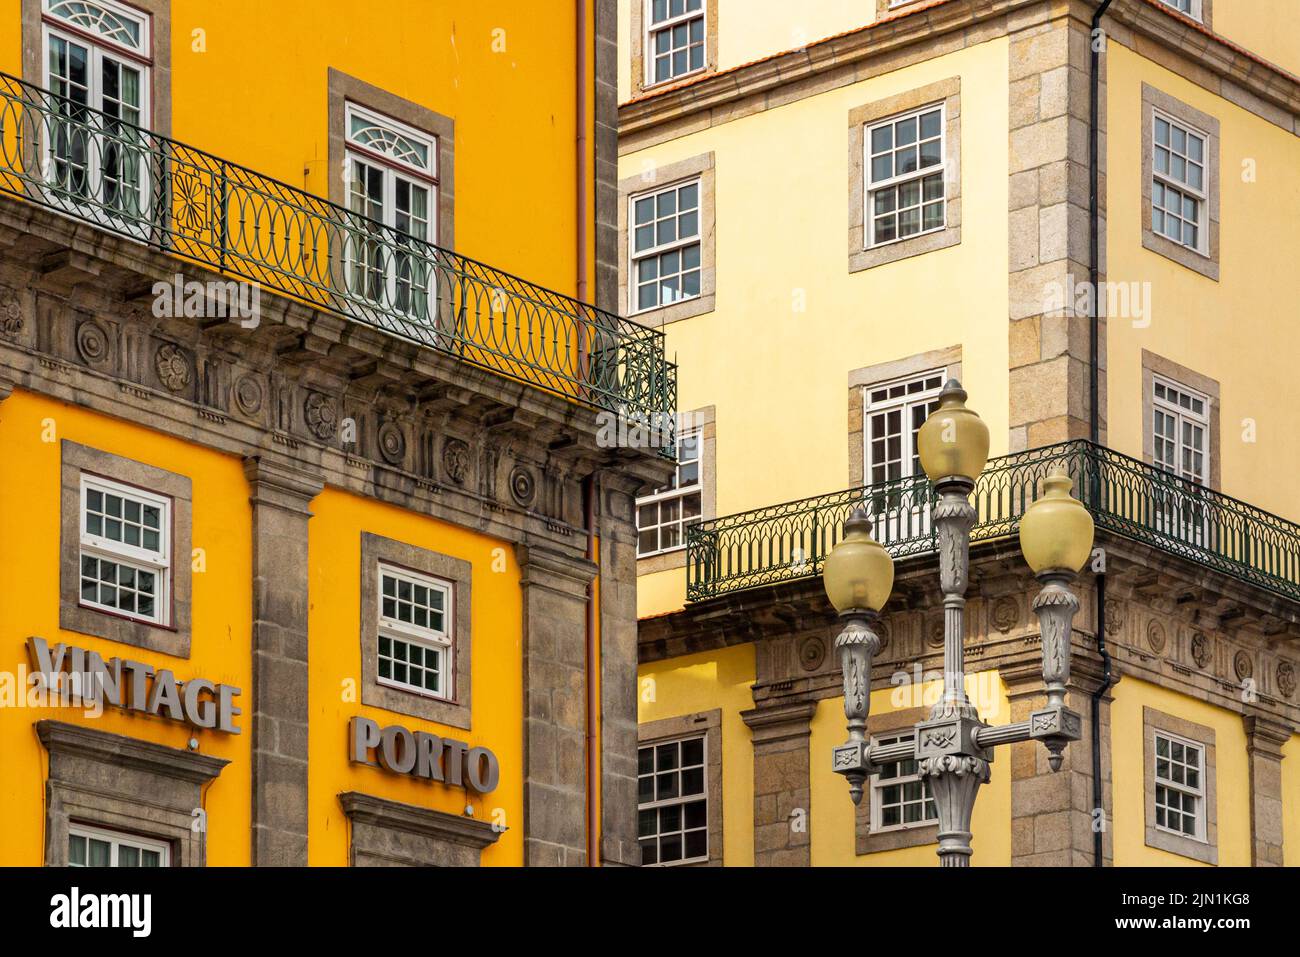 Edificios tradicionales con balcones de hierro forjado en el centro de Porto, una ciudad importante en el norte de Portugal. Foto de stock